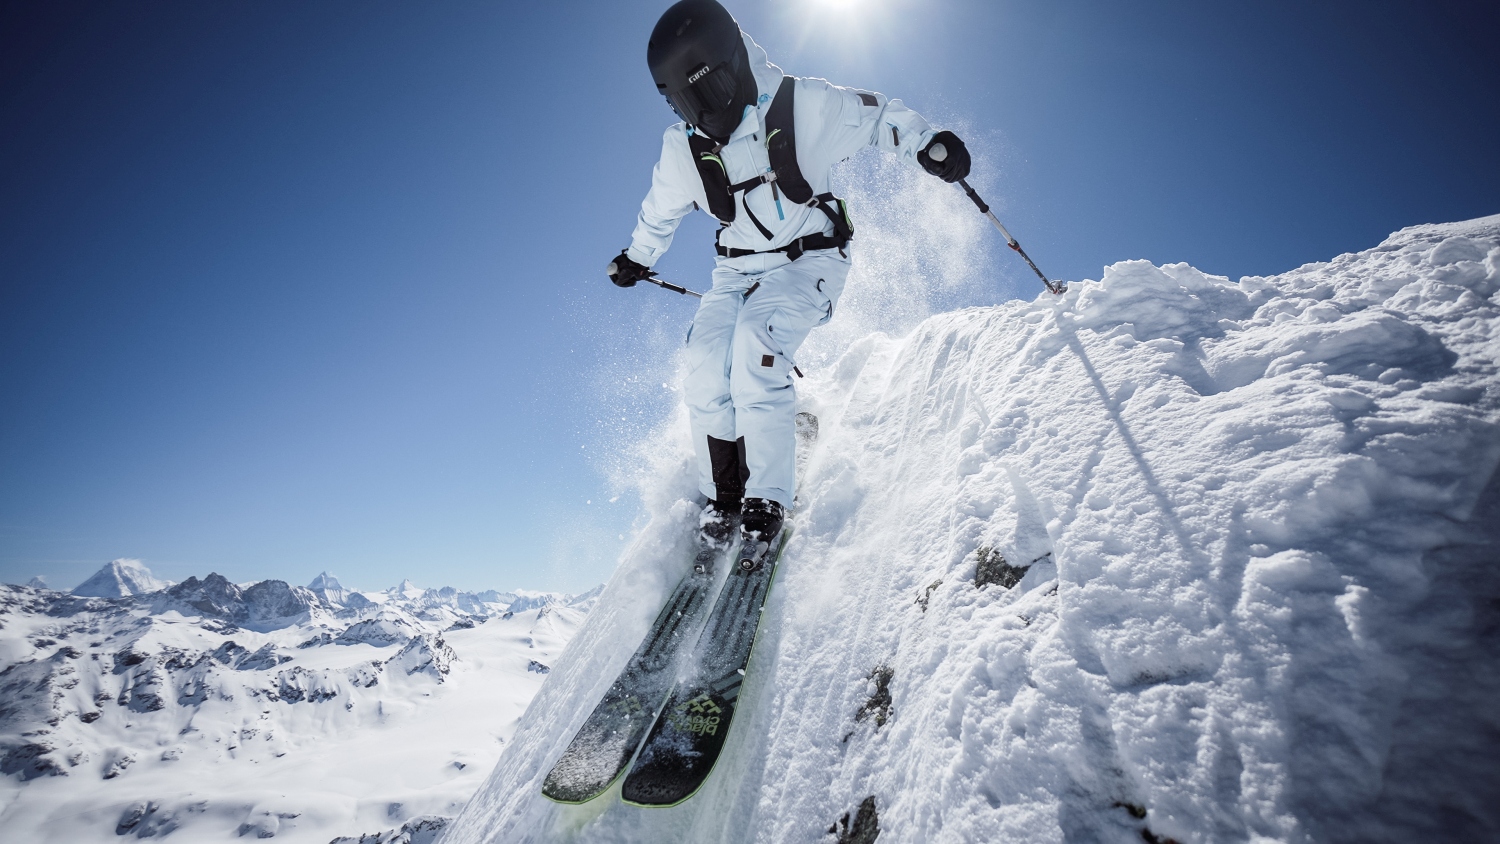 oosc-yeh-man-ski-gear